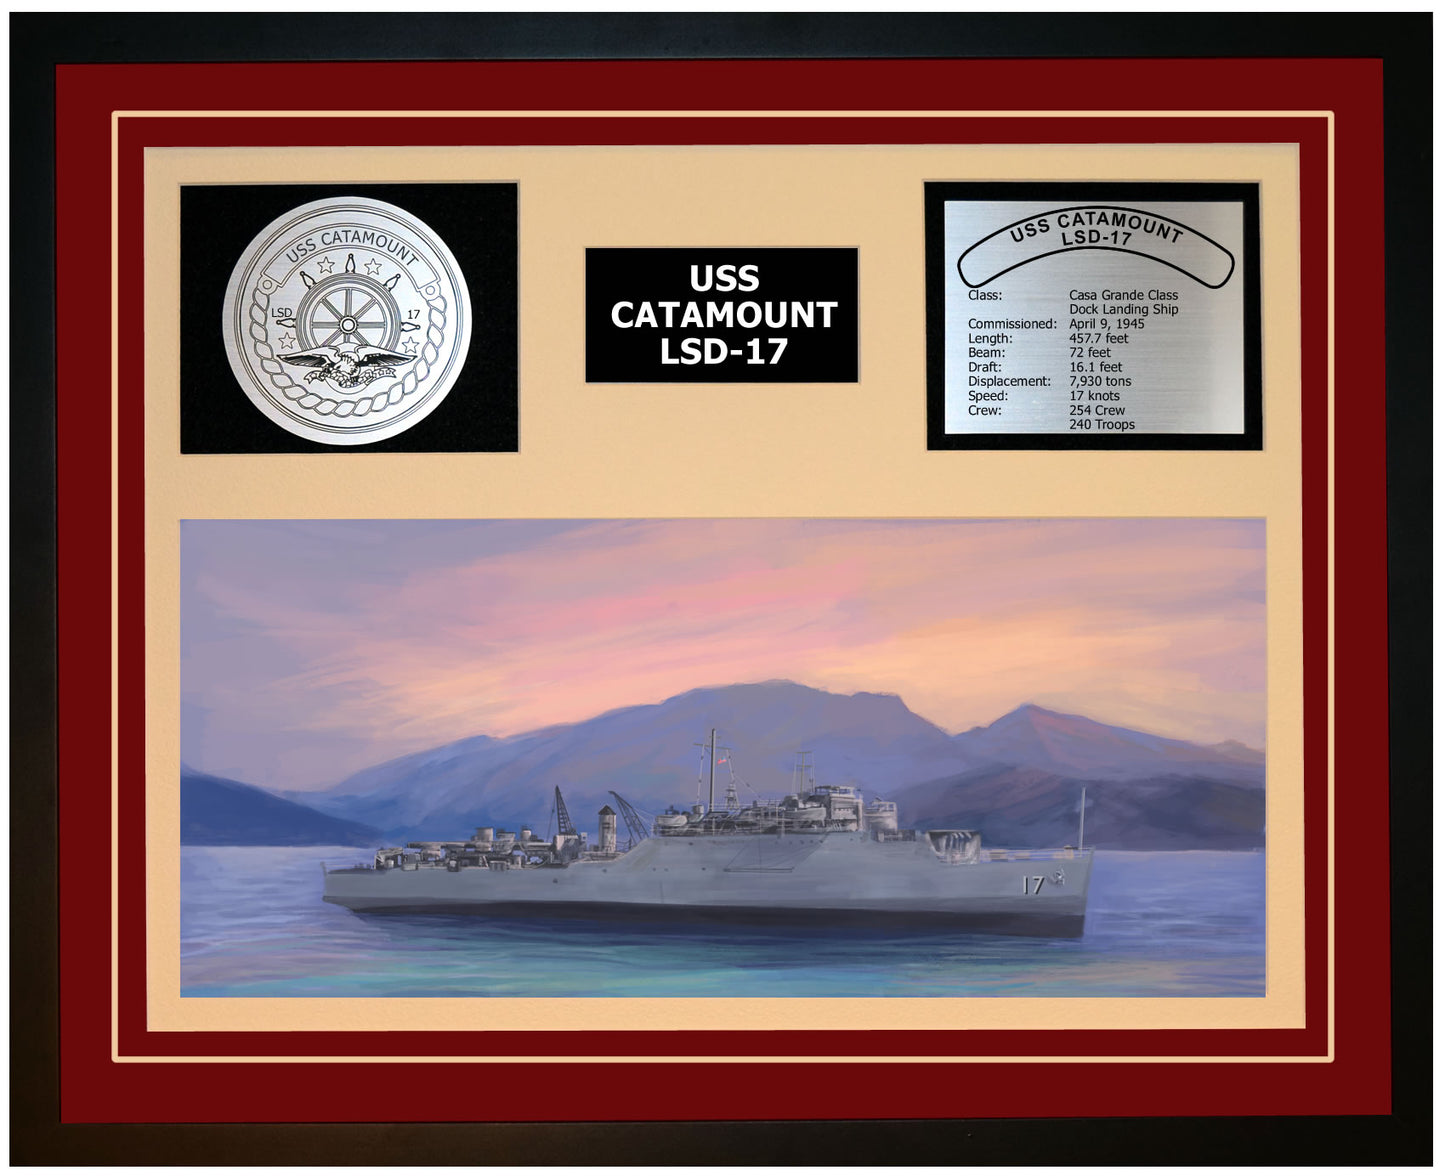 USS CATAMOUNT LSD-17 Framed Navy Ship Display Burgundy